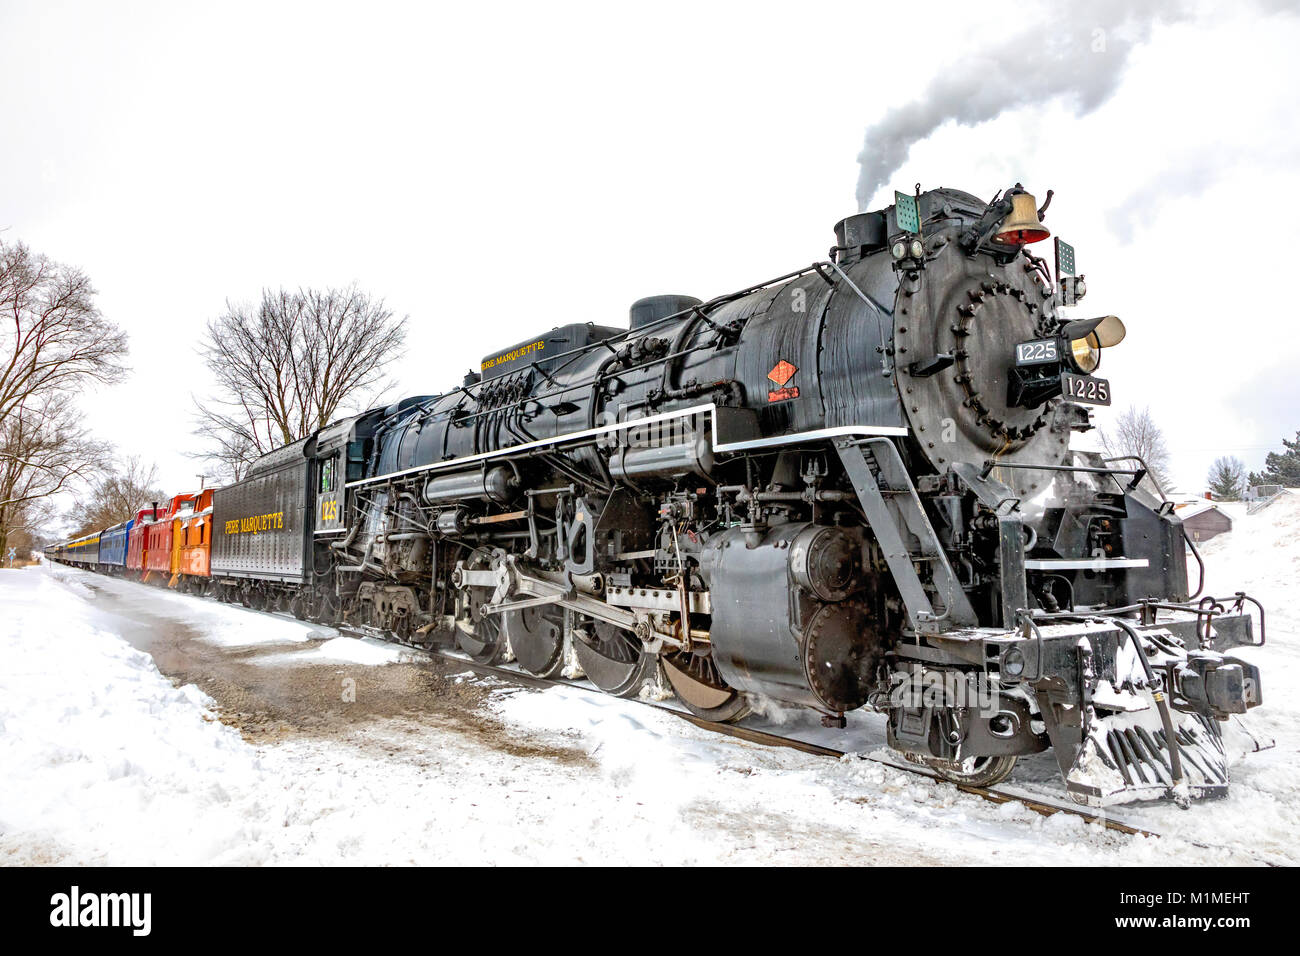 Das Pere Marquette 1225 "Nordpol Express" Eine alte Dampfmaschine, Dampf spuckende an einem verschneiten Tag Stockfoto